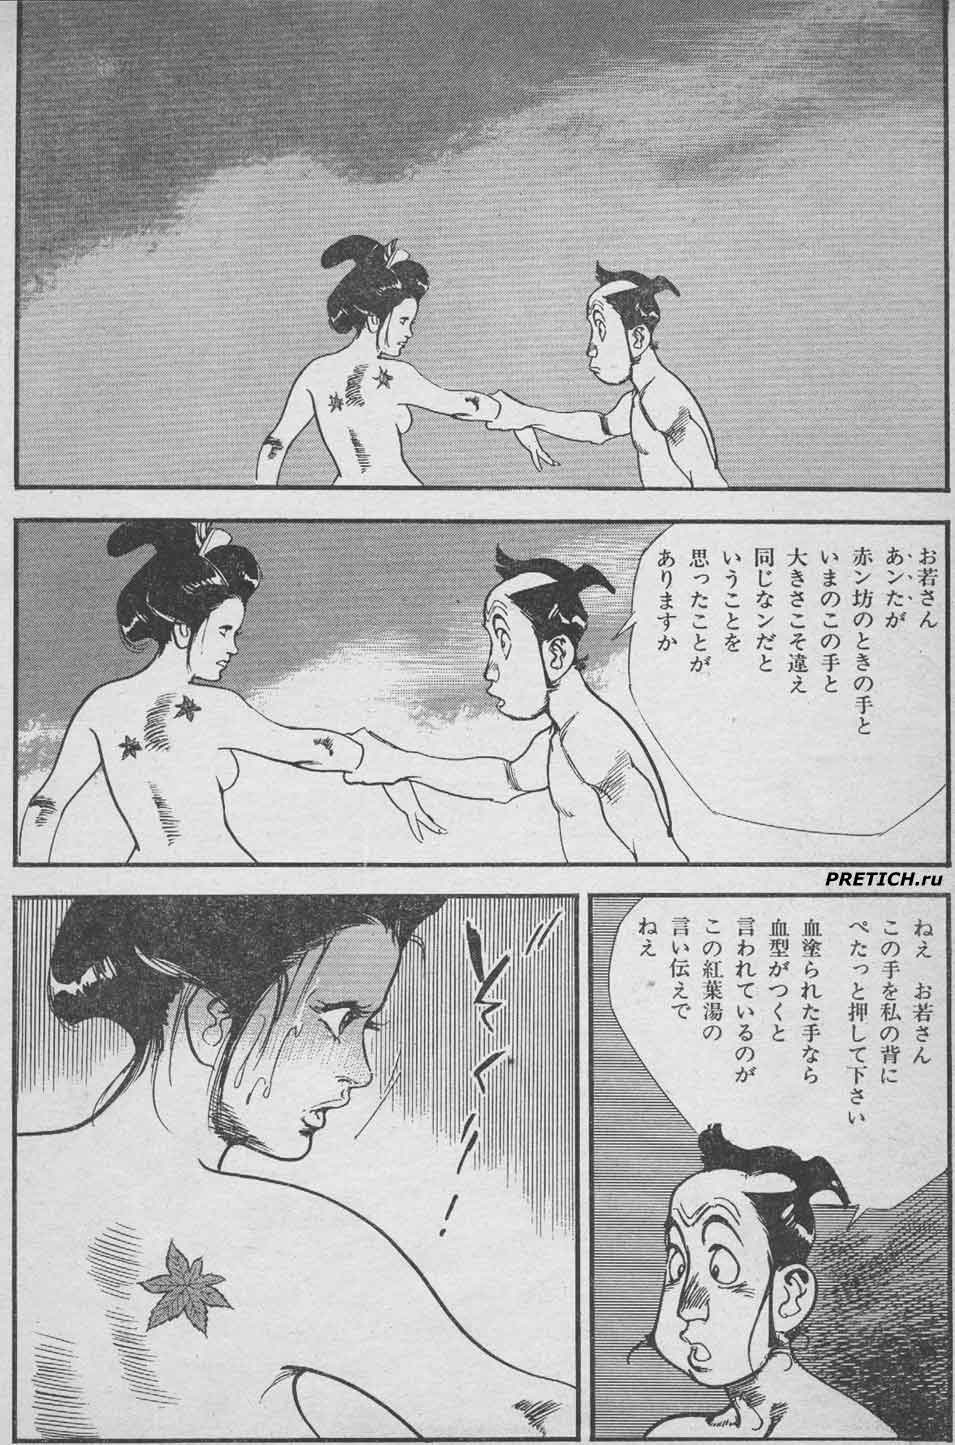 старые японские комиксы с девушками и самураями